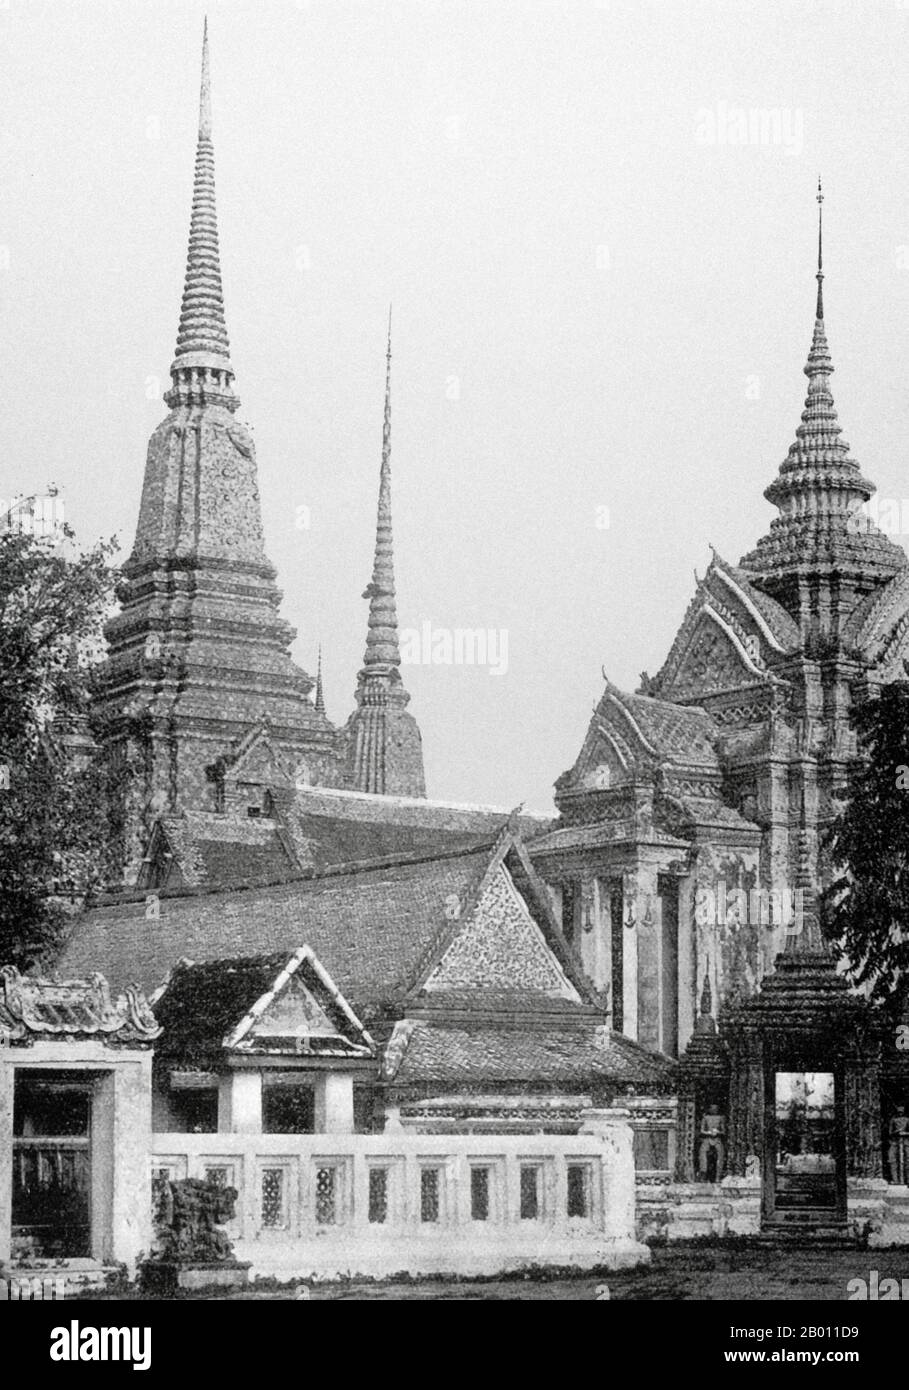 Thaïlande: Certains des chedis au Wat Pho (Temple du Bouddha couché) à Bangkok, fin du XIXe siècle. Construit au XVIe siècle, Wat Pho est le plus ancien temple de Bangkok. Le roi Rama I de la dynastie Chakri (1736—1809) reconstruit le temple dans les années 1780. Officiellement appelé Wat Phra Chetuphon, c'est l'un des temples bouddhistes les plus connus de Bangkok et est aujourd'hui une attraction touristique majeure, situé directement au sud du Grand Palais. Wat Pho est célèbre pour son Bouddha couché et renommé comme la maison du massage thaïlandais traditionnel. Banque D'Images